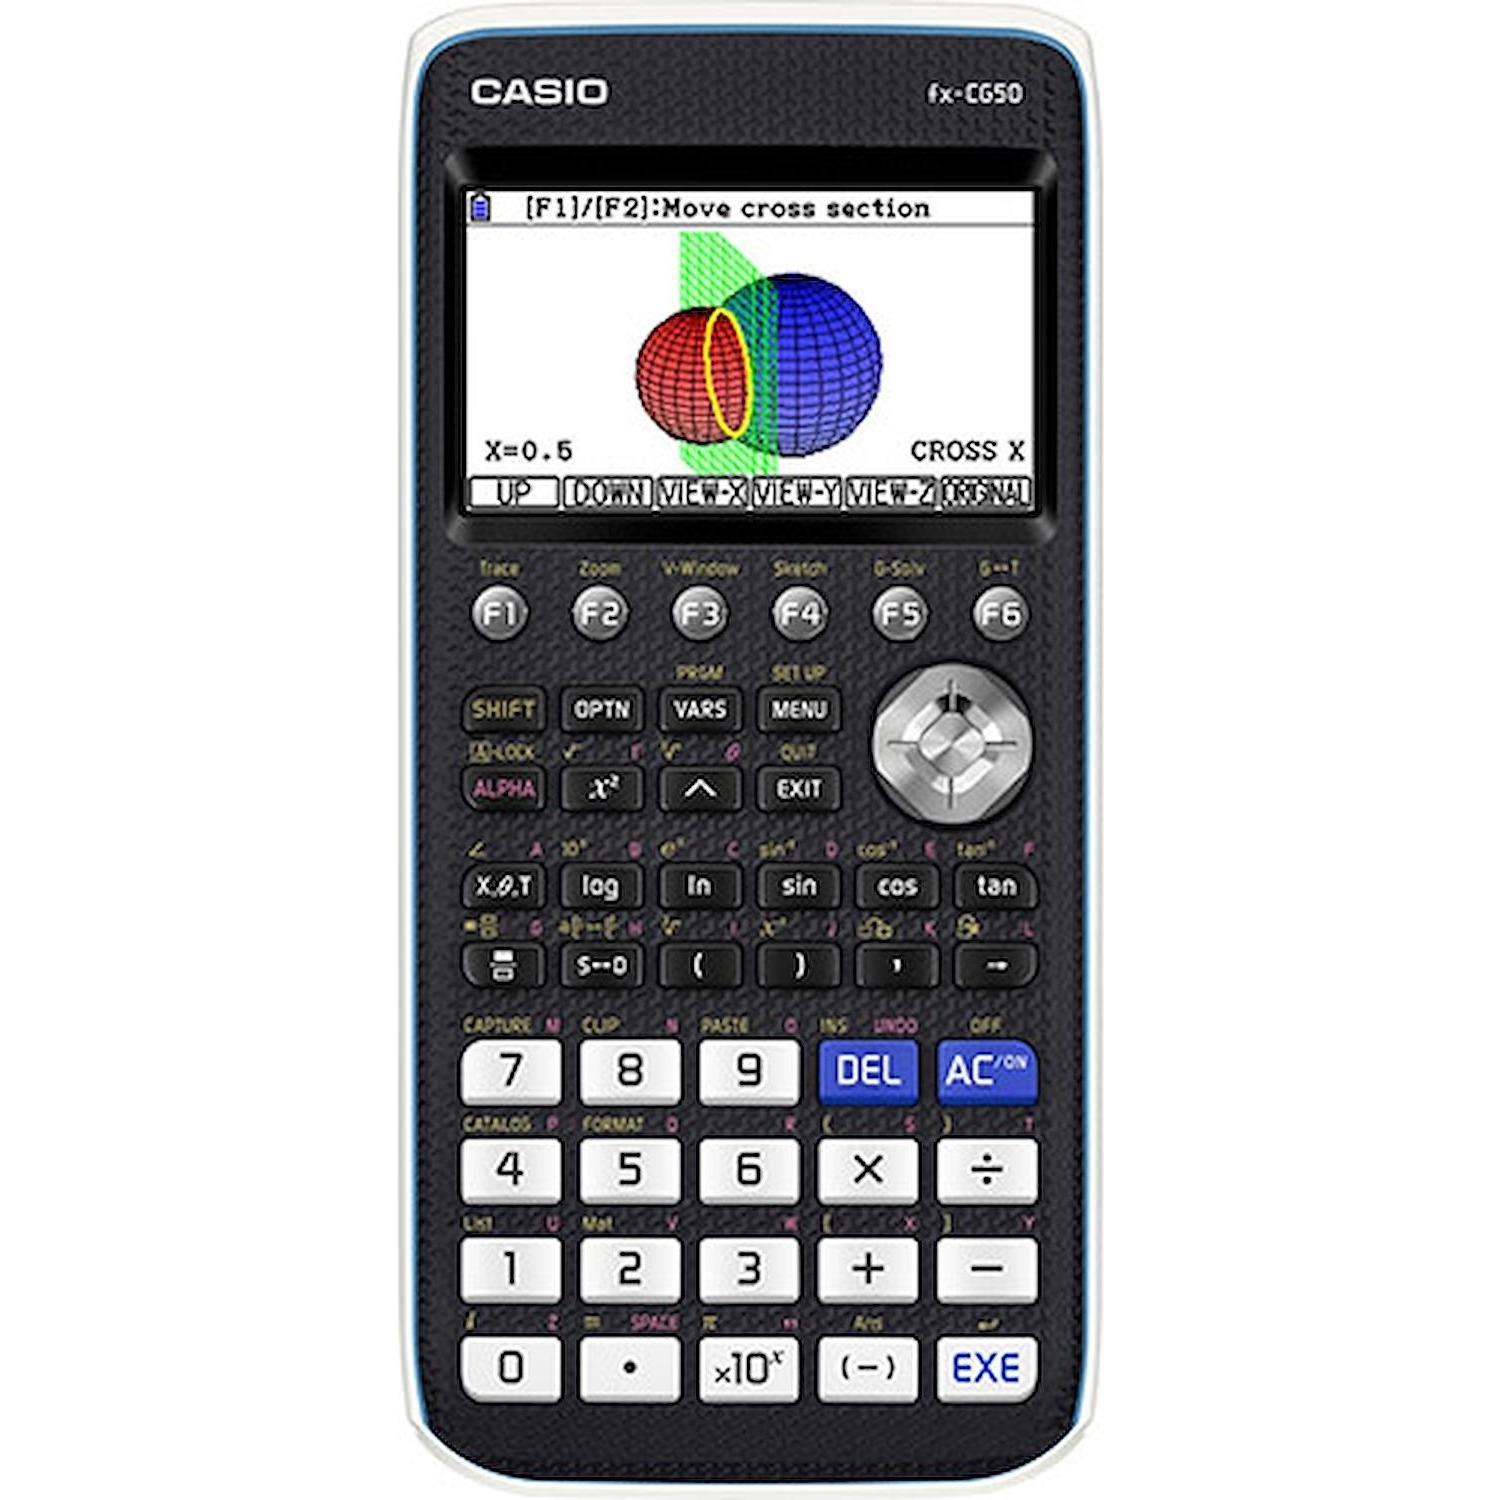 Immagine per Calcolatrice CASIO FXCG50 grafica da DIMOStore